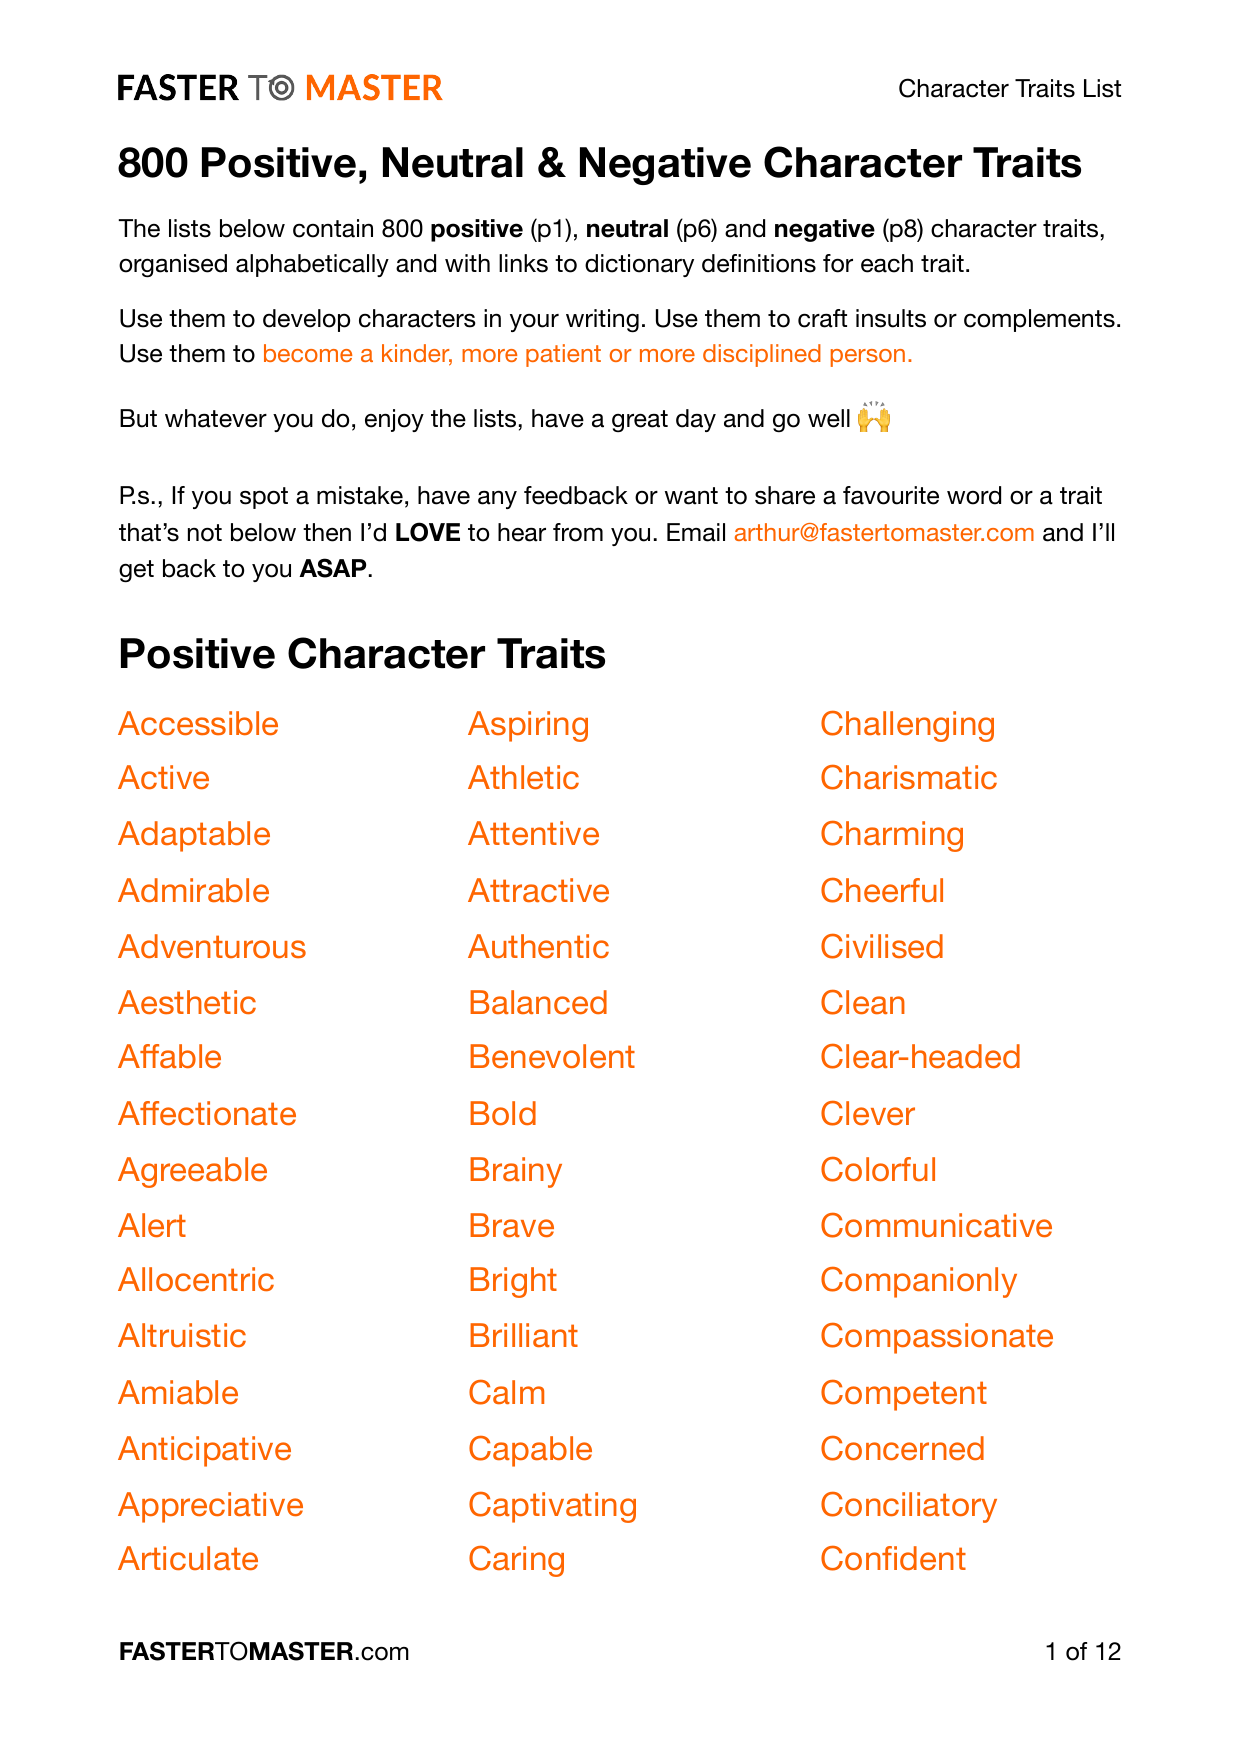 Character Traits List V1 0